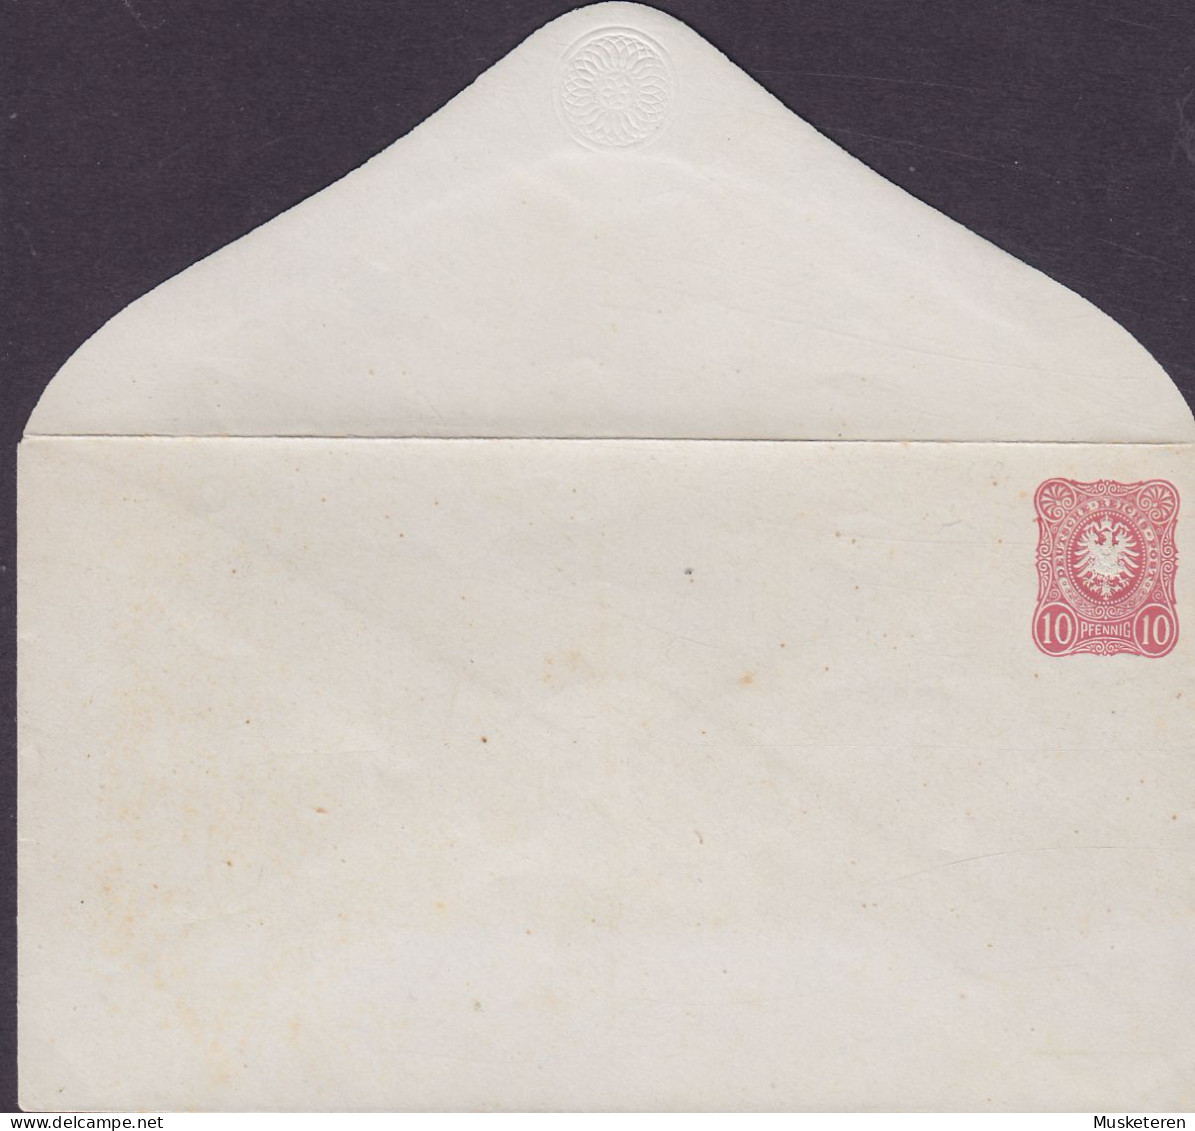 Deutsche Reichspost Postal Stationery Ganzsache Entier Umschlag 1876, 10 Pf. Prägedruck Adler Eagle (Unused) (2 Scans) - Sobres